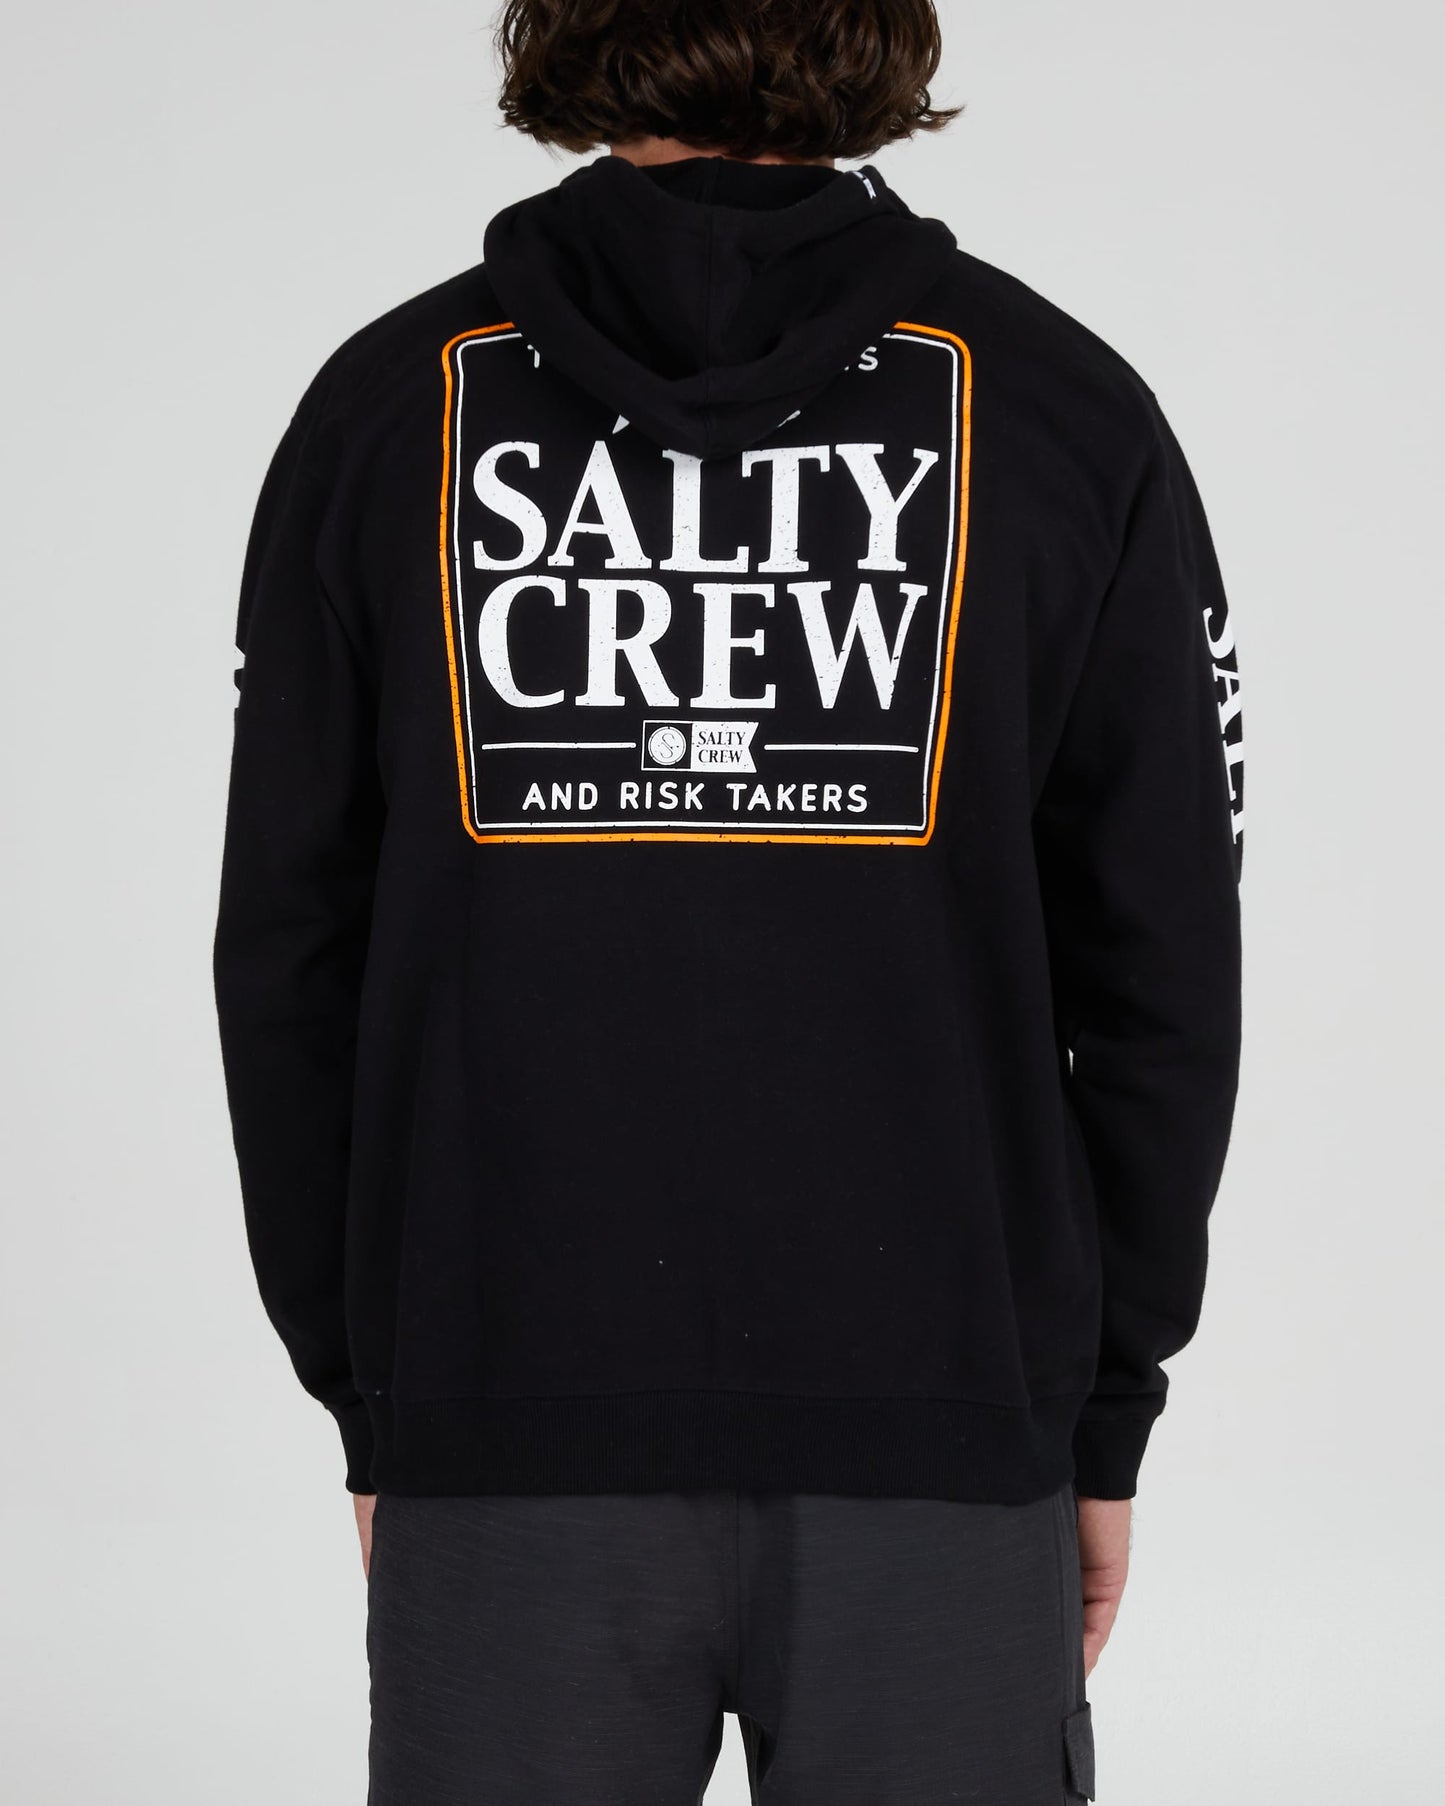 Salty Crew Hommes - Coaster Zip Fleece - Black